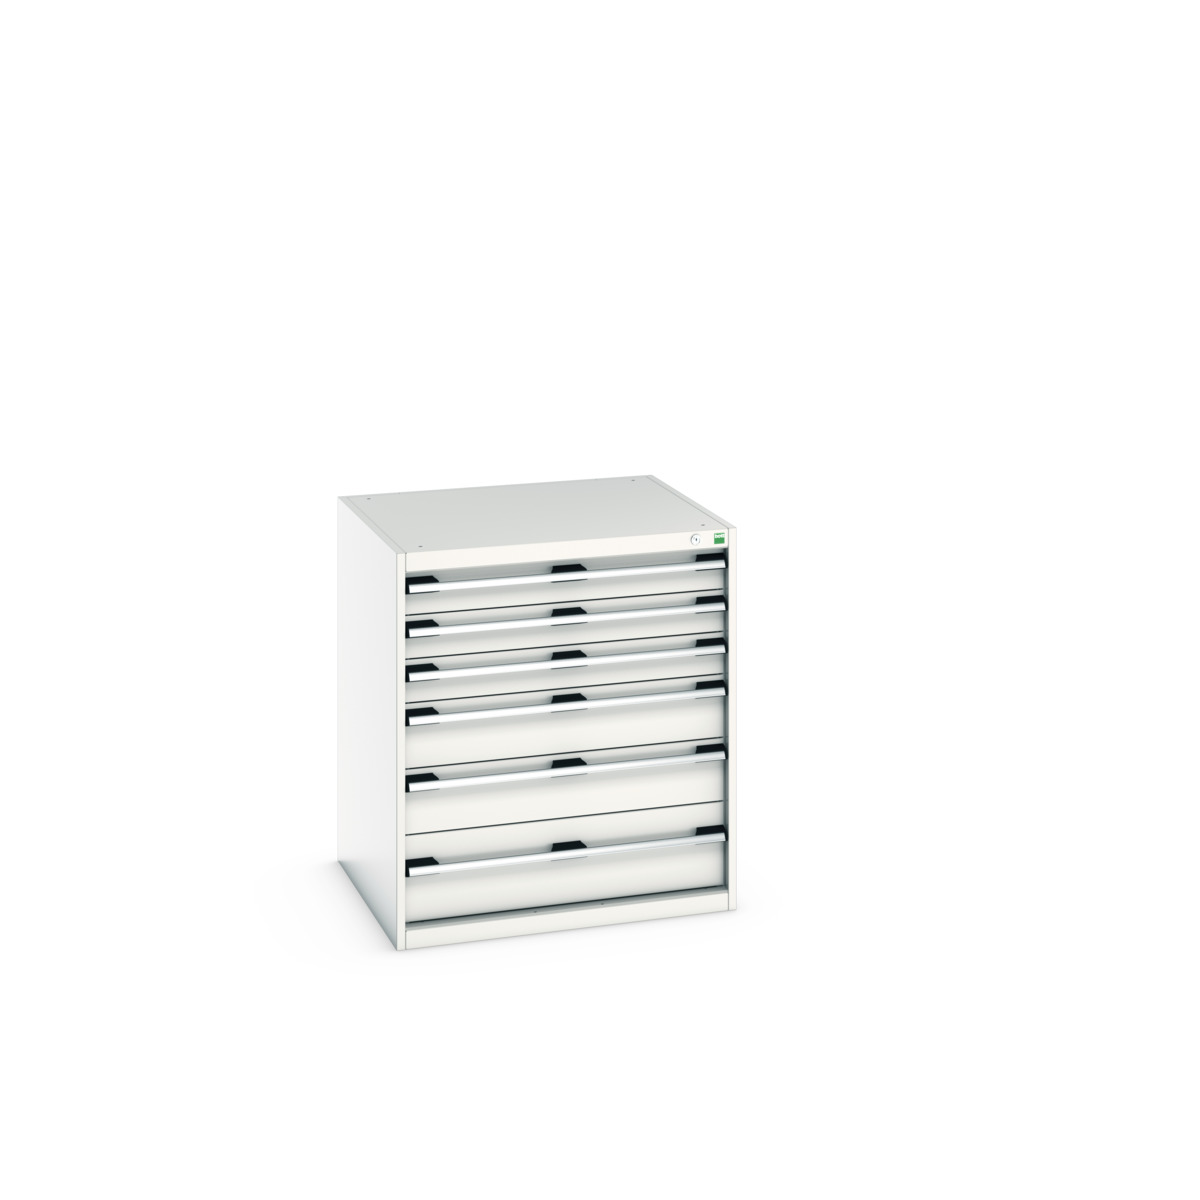 40028116.16V - cubio drawer cabinet